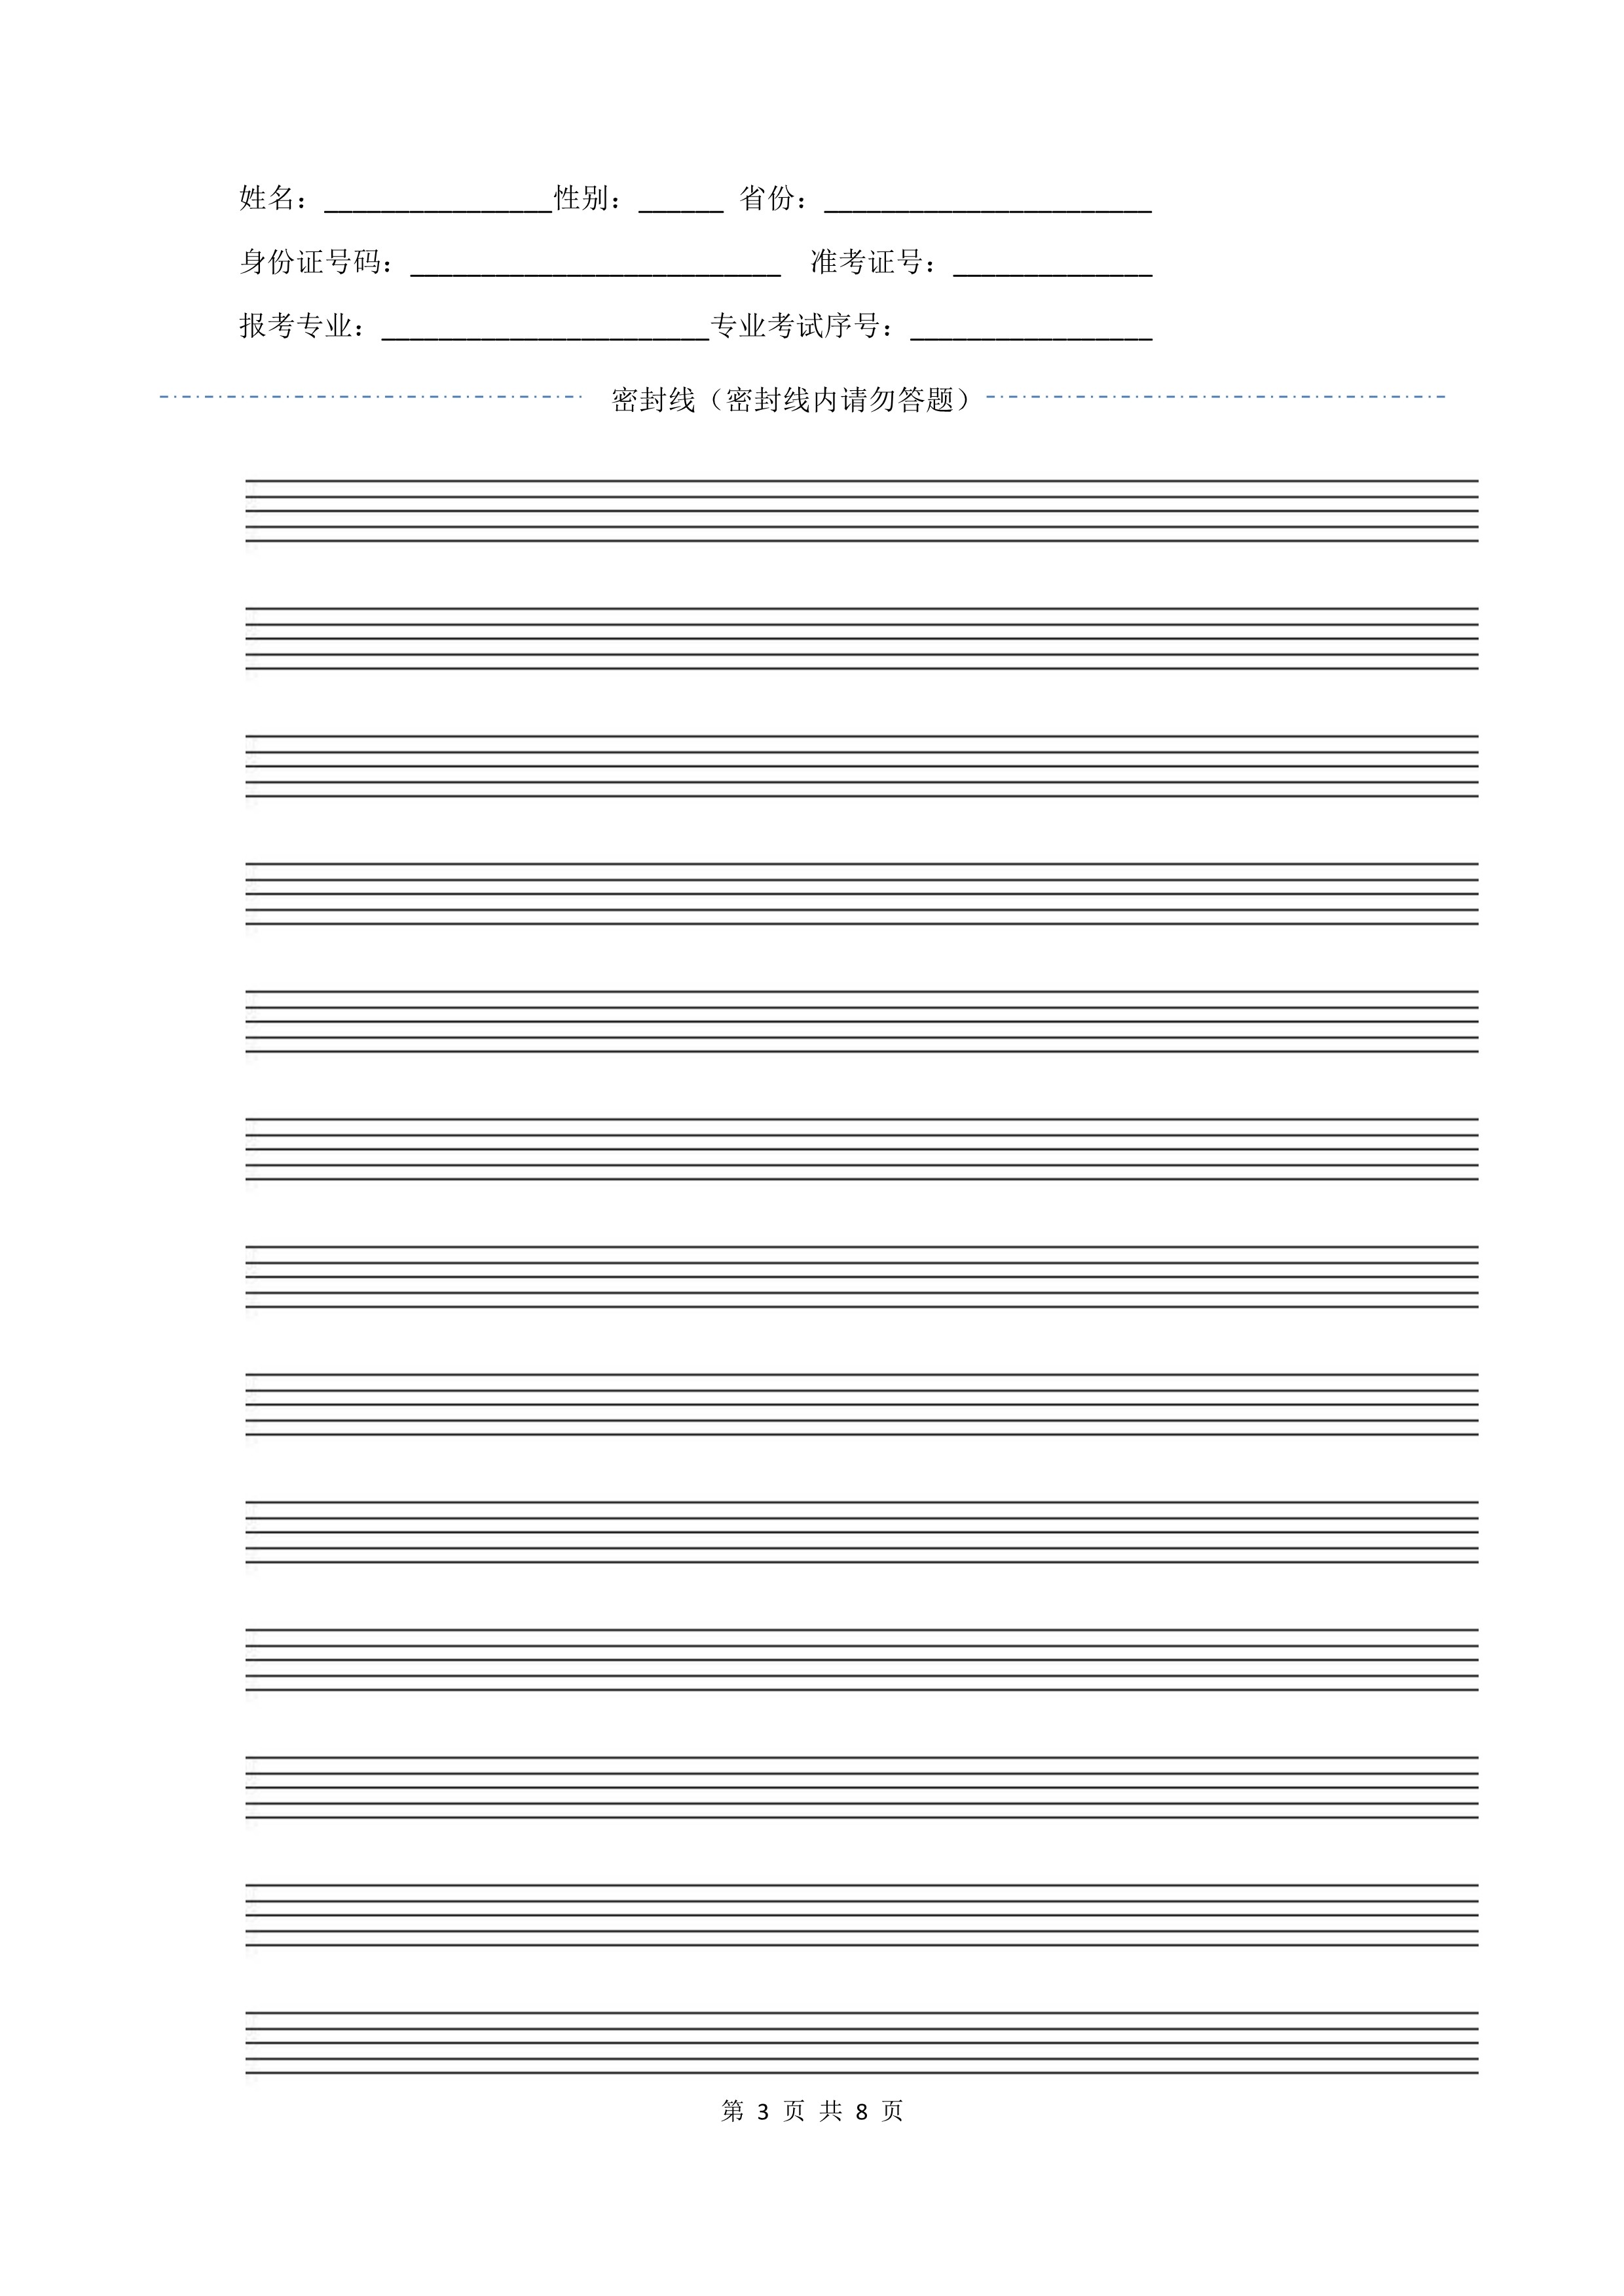 南京艺术学院2022年本科招生作曲与作曲技术理论、作曲与作曲技术理论（计算机作曲）专业《歌曲写作》科目考试答题纸及草稿纸_3.jpg